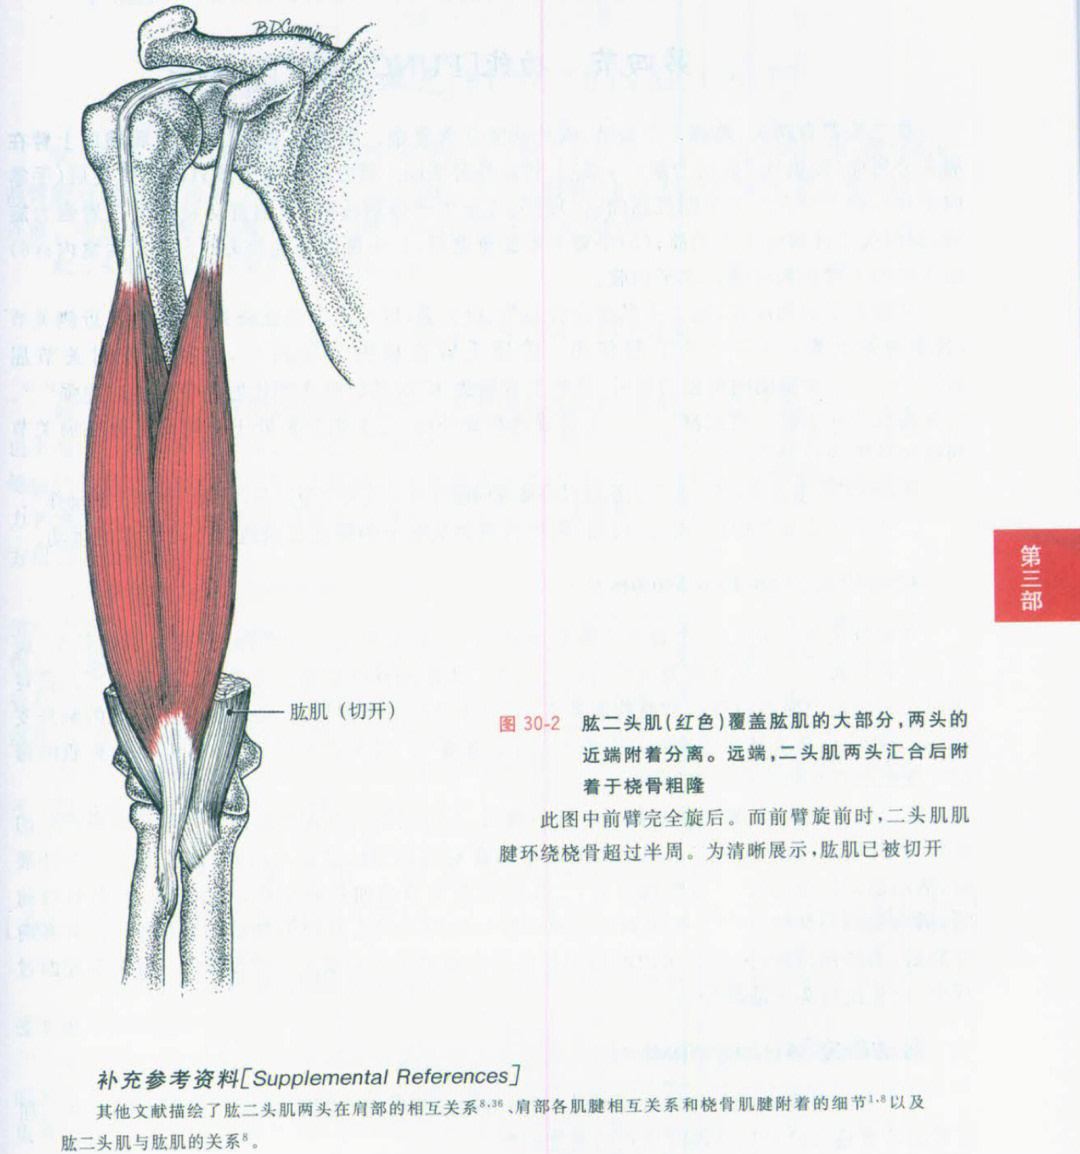 肱二头肌解剖图图片